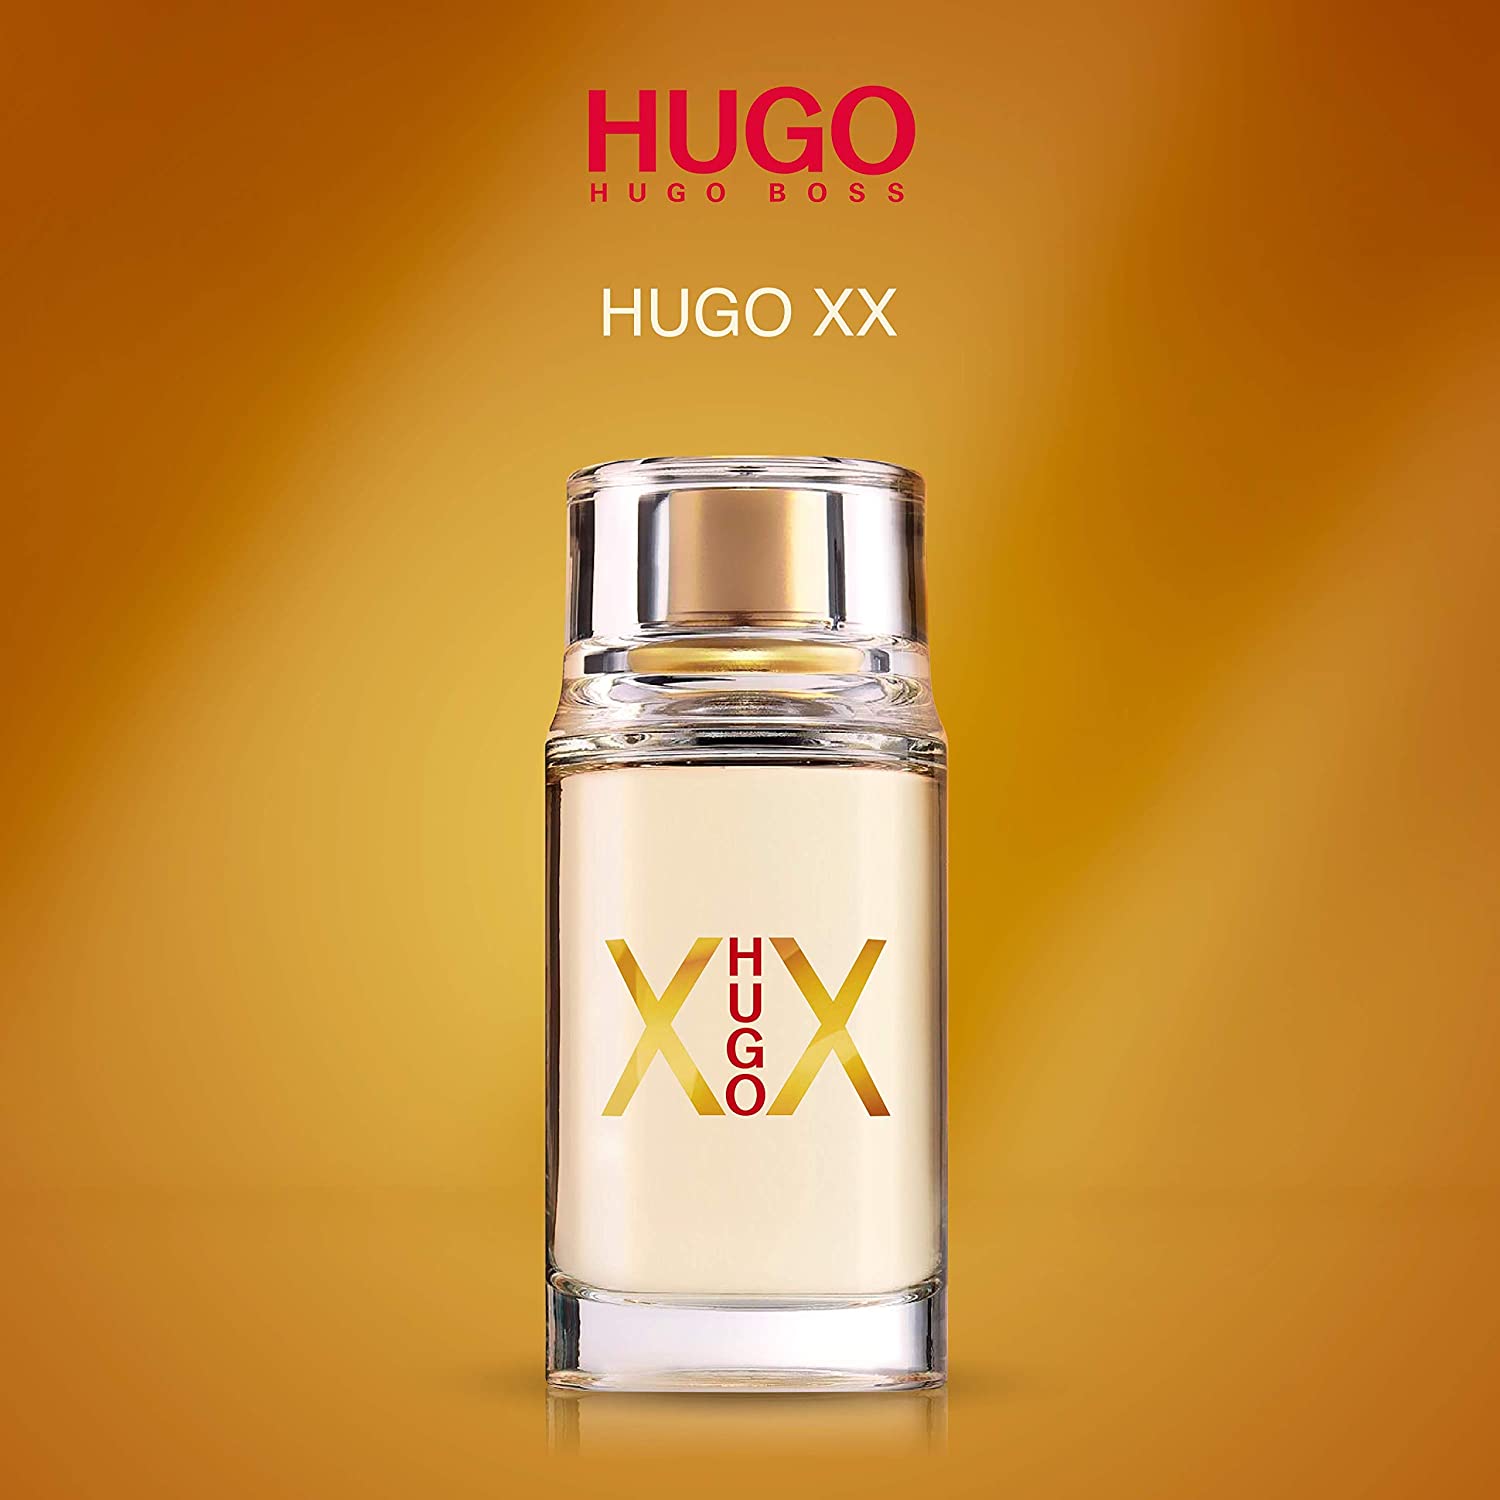 hugo xx woman